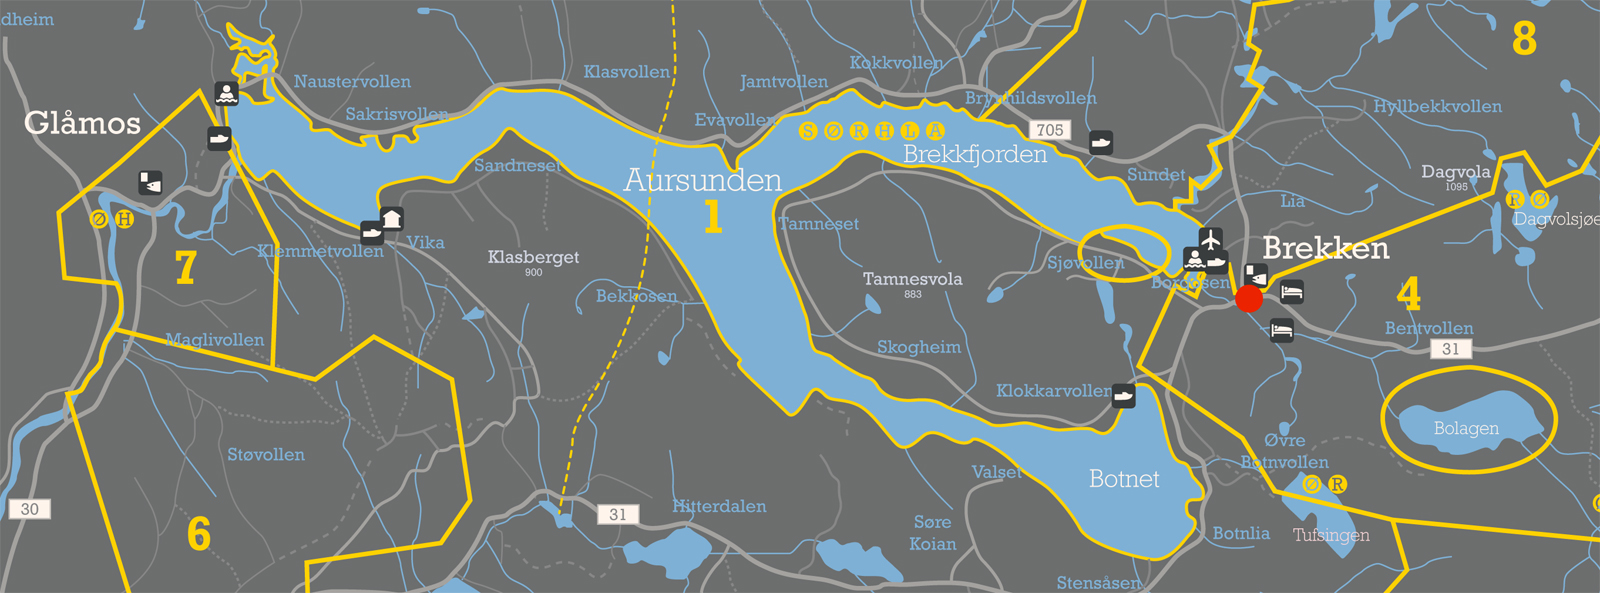 aursunden_kart